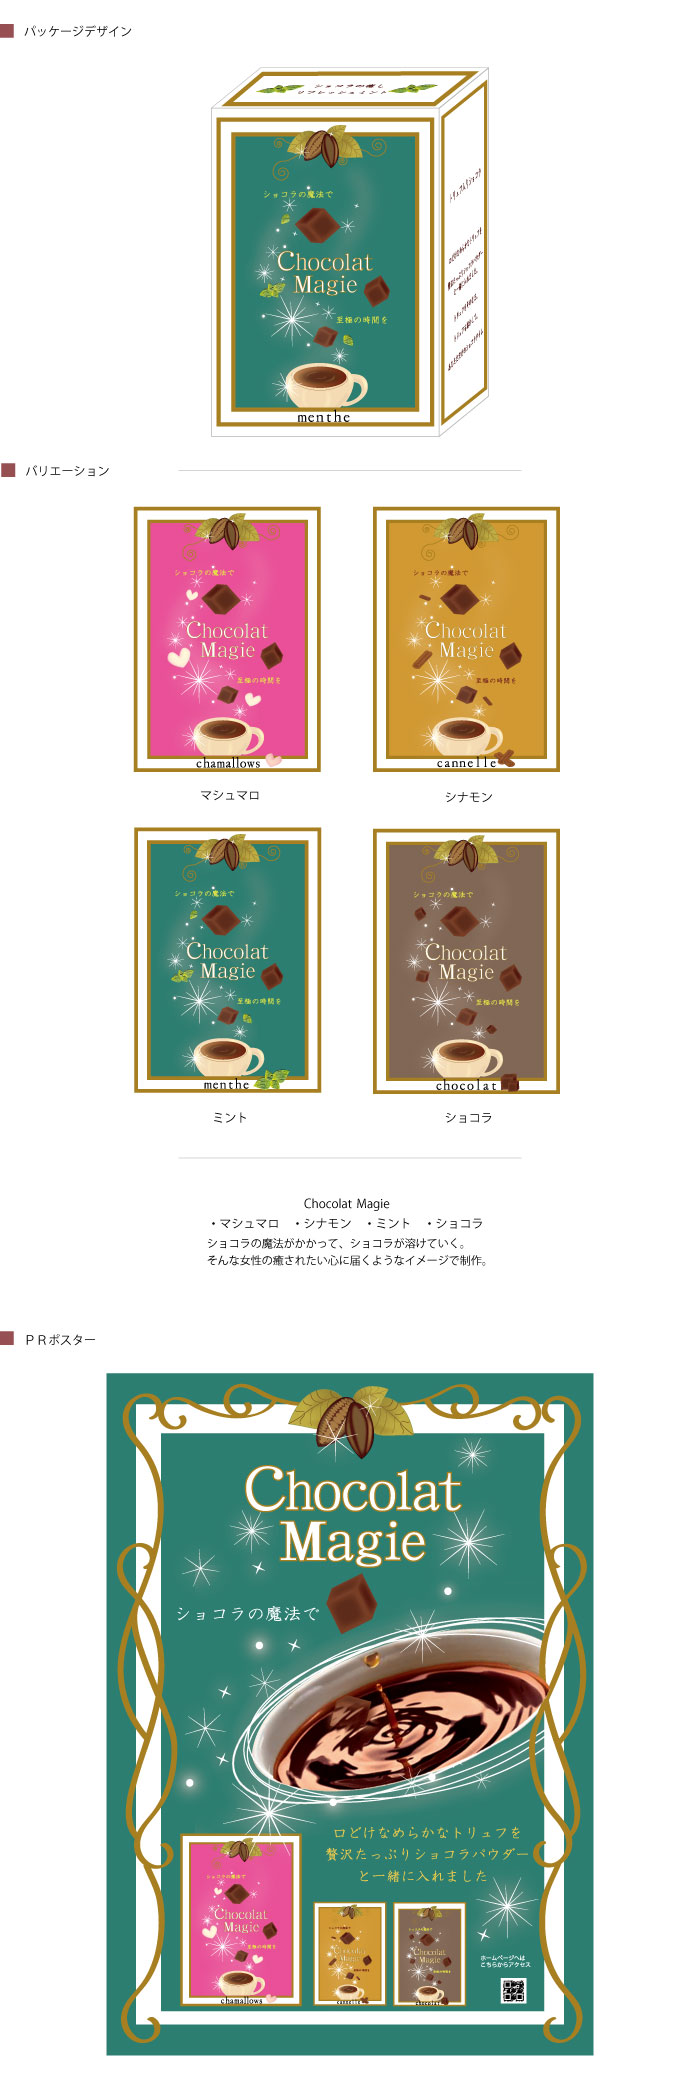 チョコレート菓子の提案商品画像。ショコラの魔法がかかるイメージで。